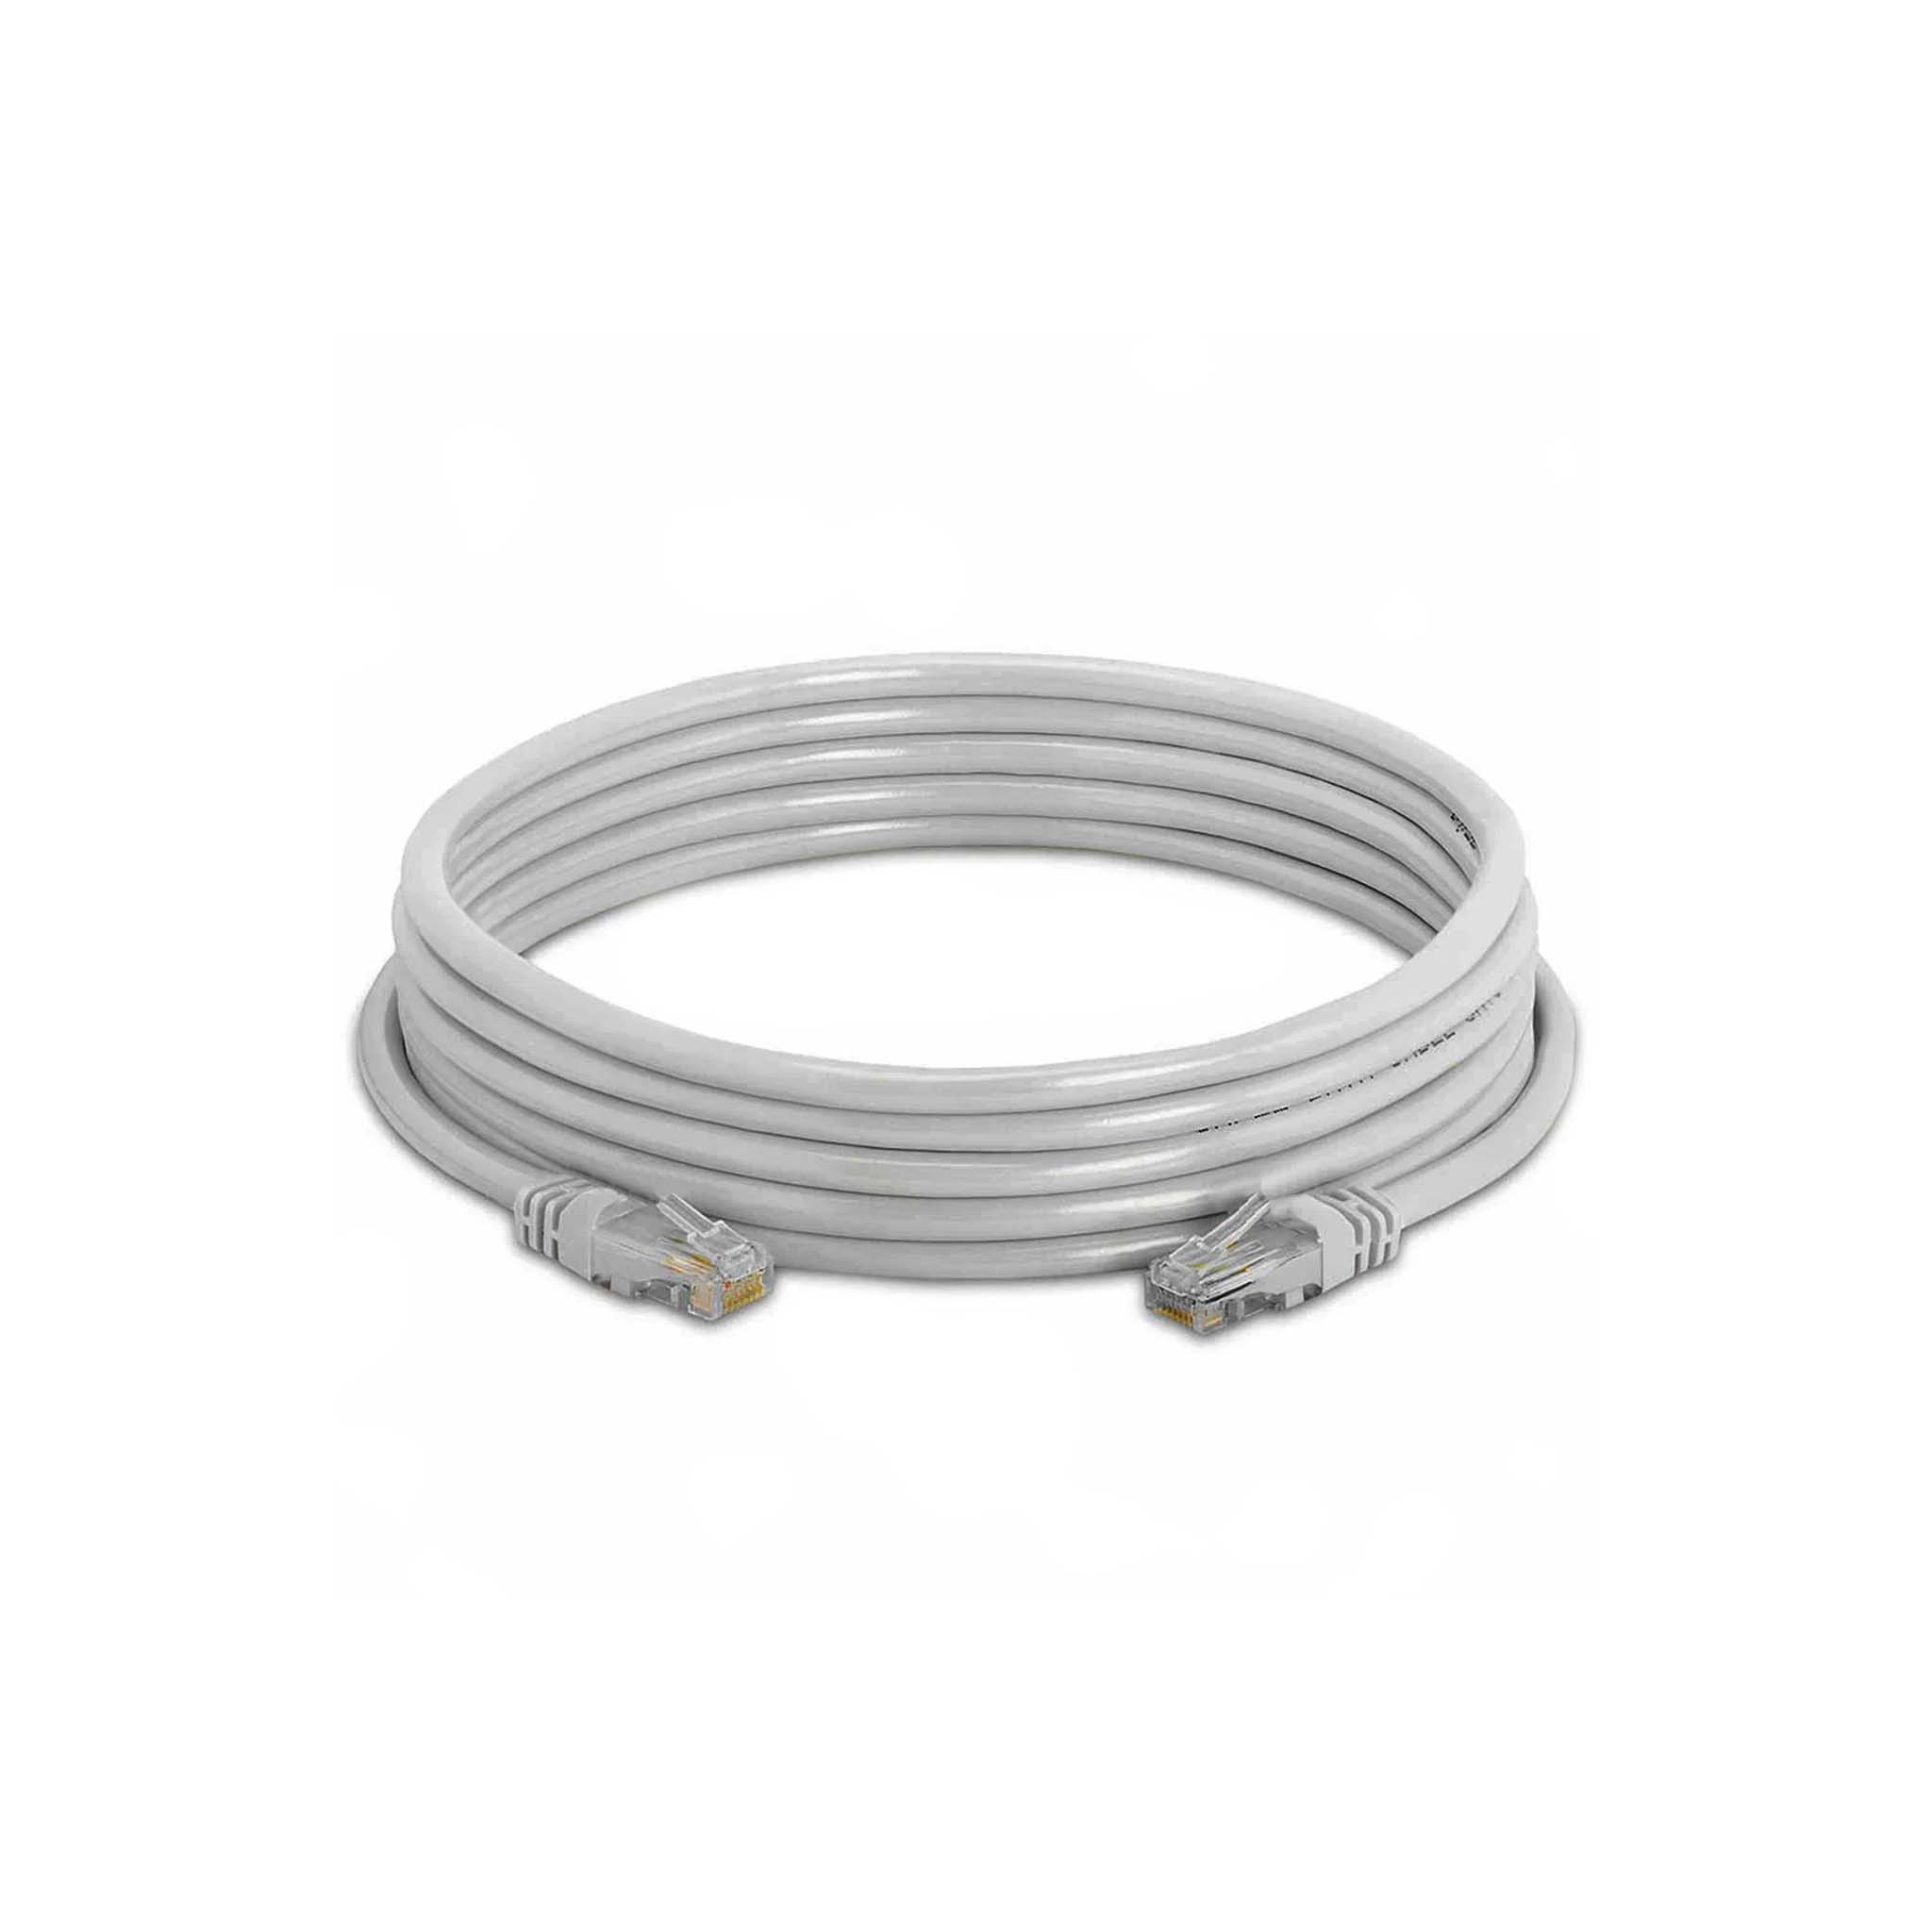 وصلة نت متأرج باتش كورد 5 متر GLINK GLINK UTP Patch Cord 5 M Network Cable One Meter Length